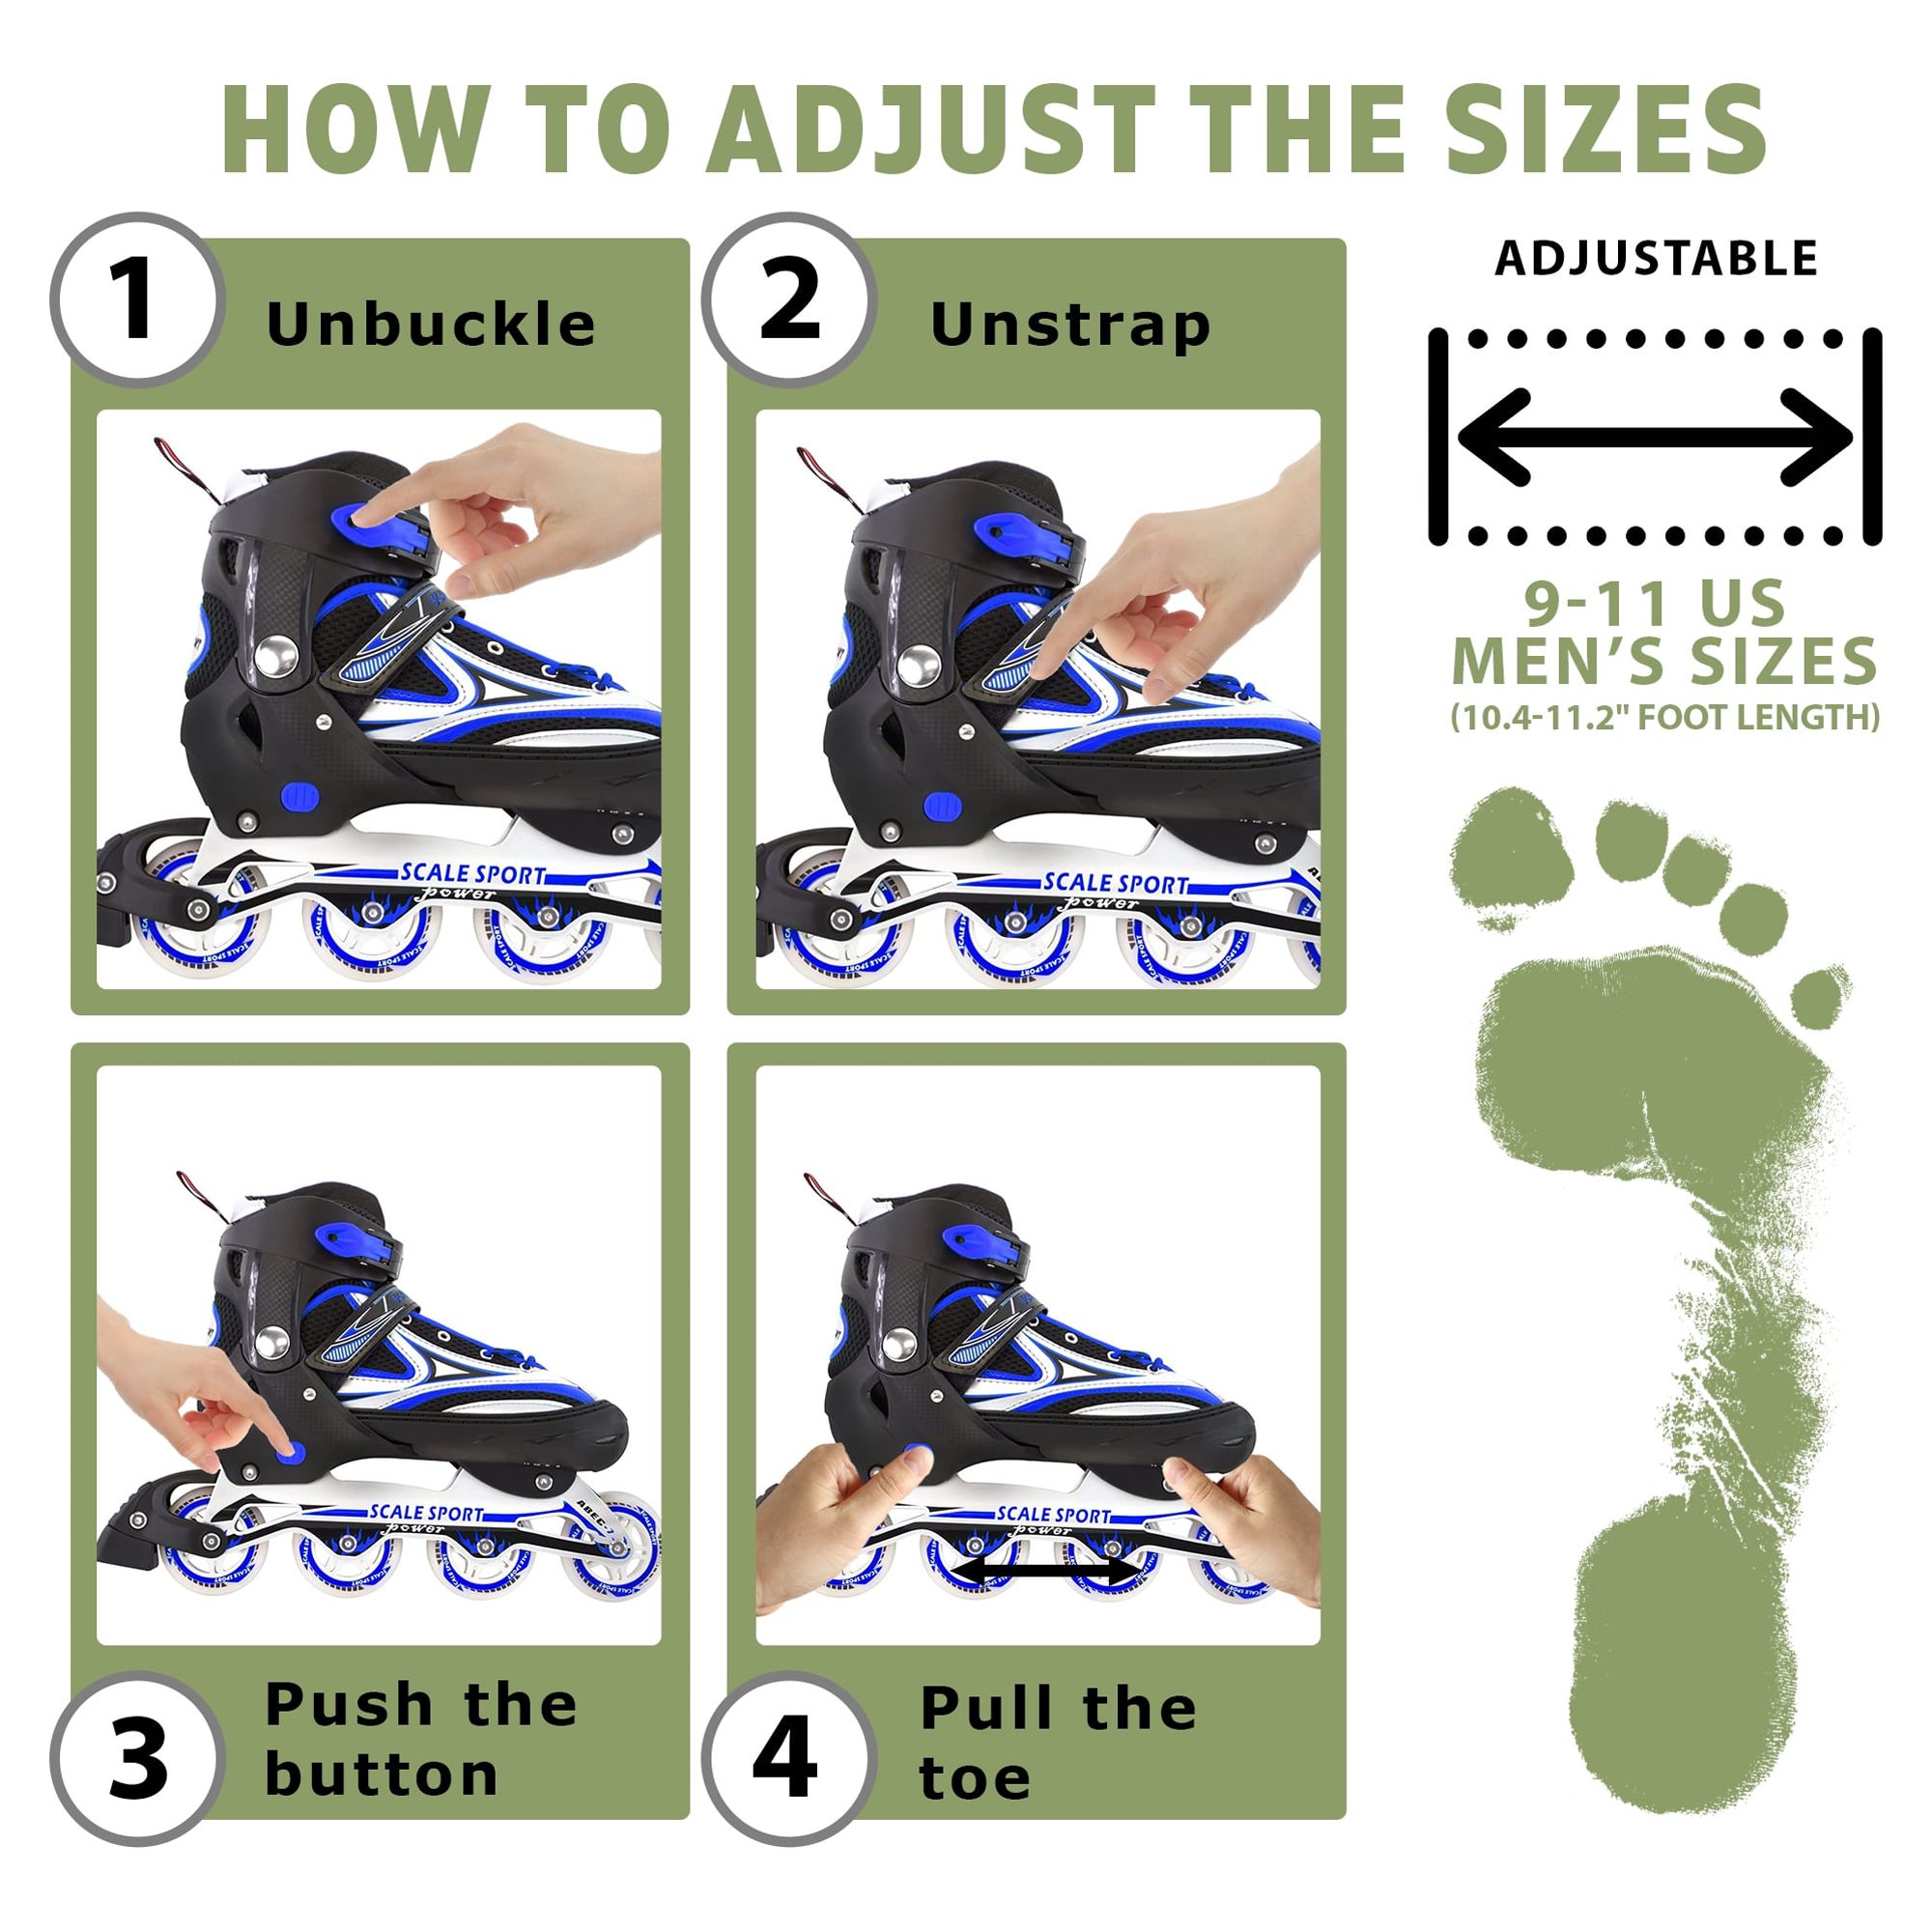 Size 8-11 Adjustable Inline Skates for Adult Men Ladies Teens Blue - image 5 of 11